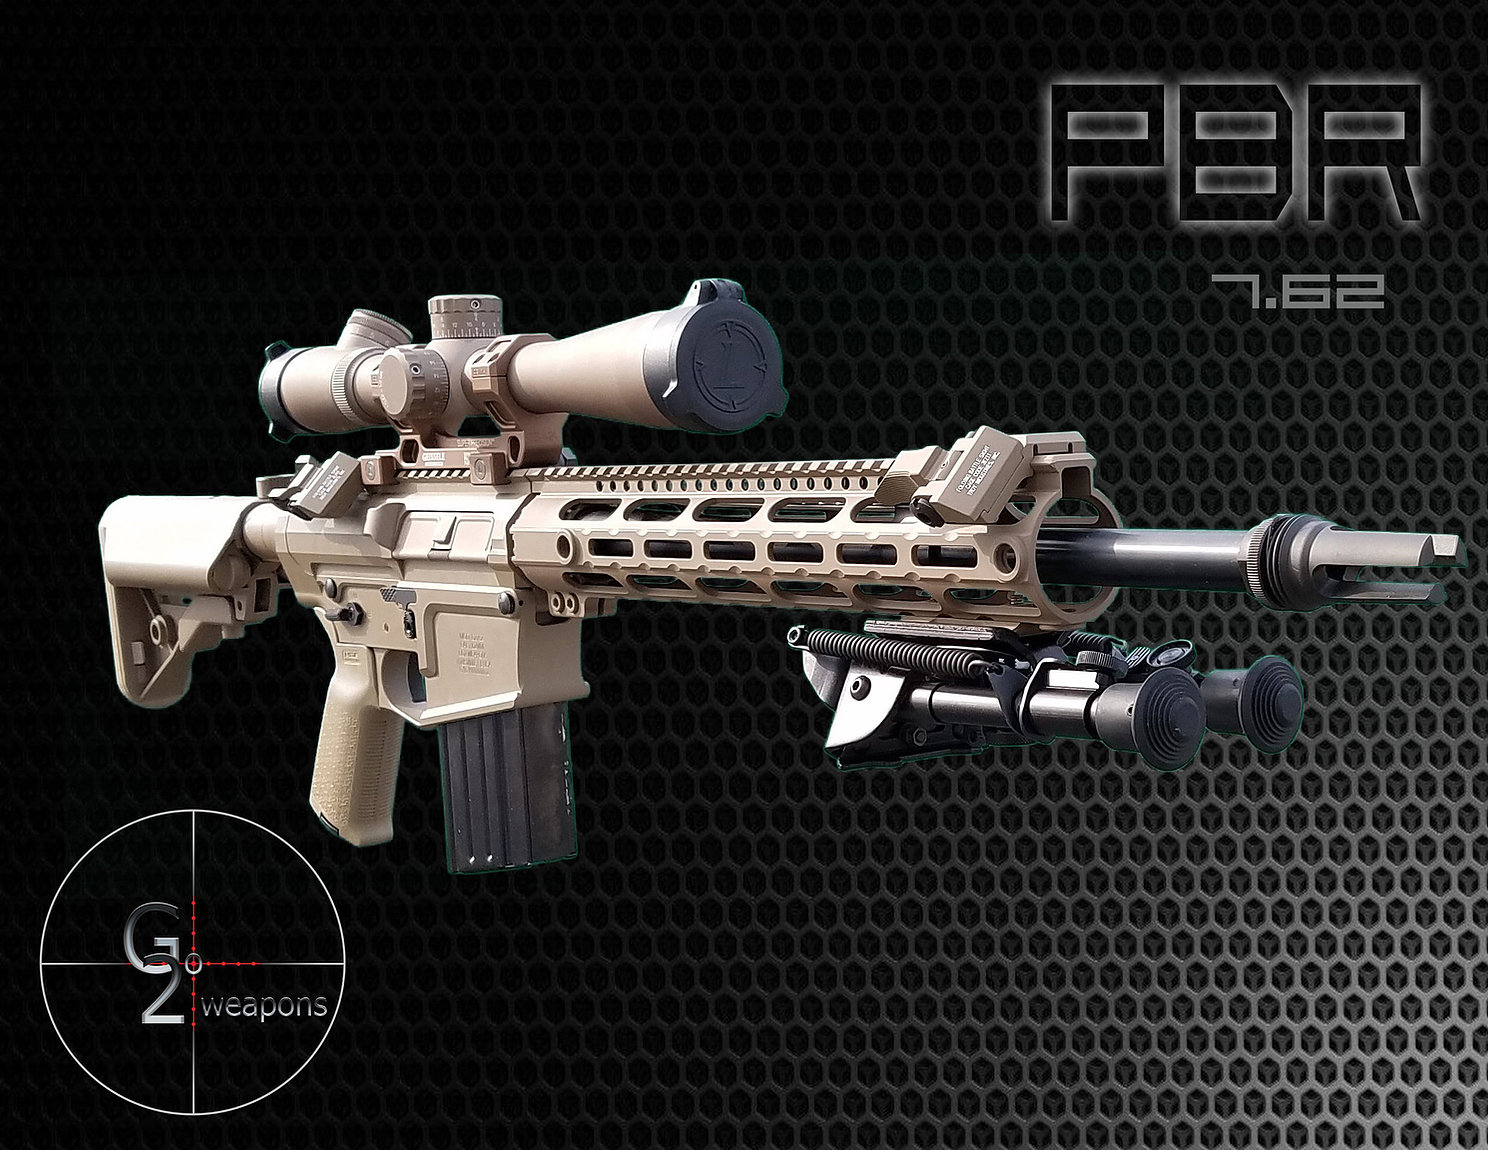 GO2 PBR DI (Precision Battle Rifle)